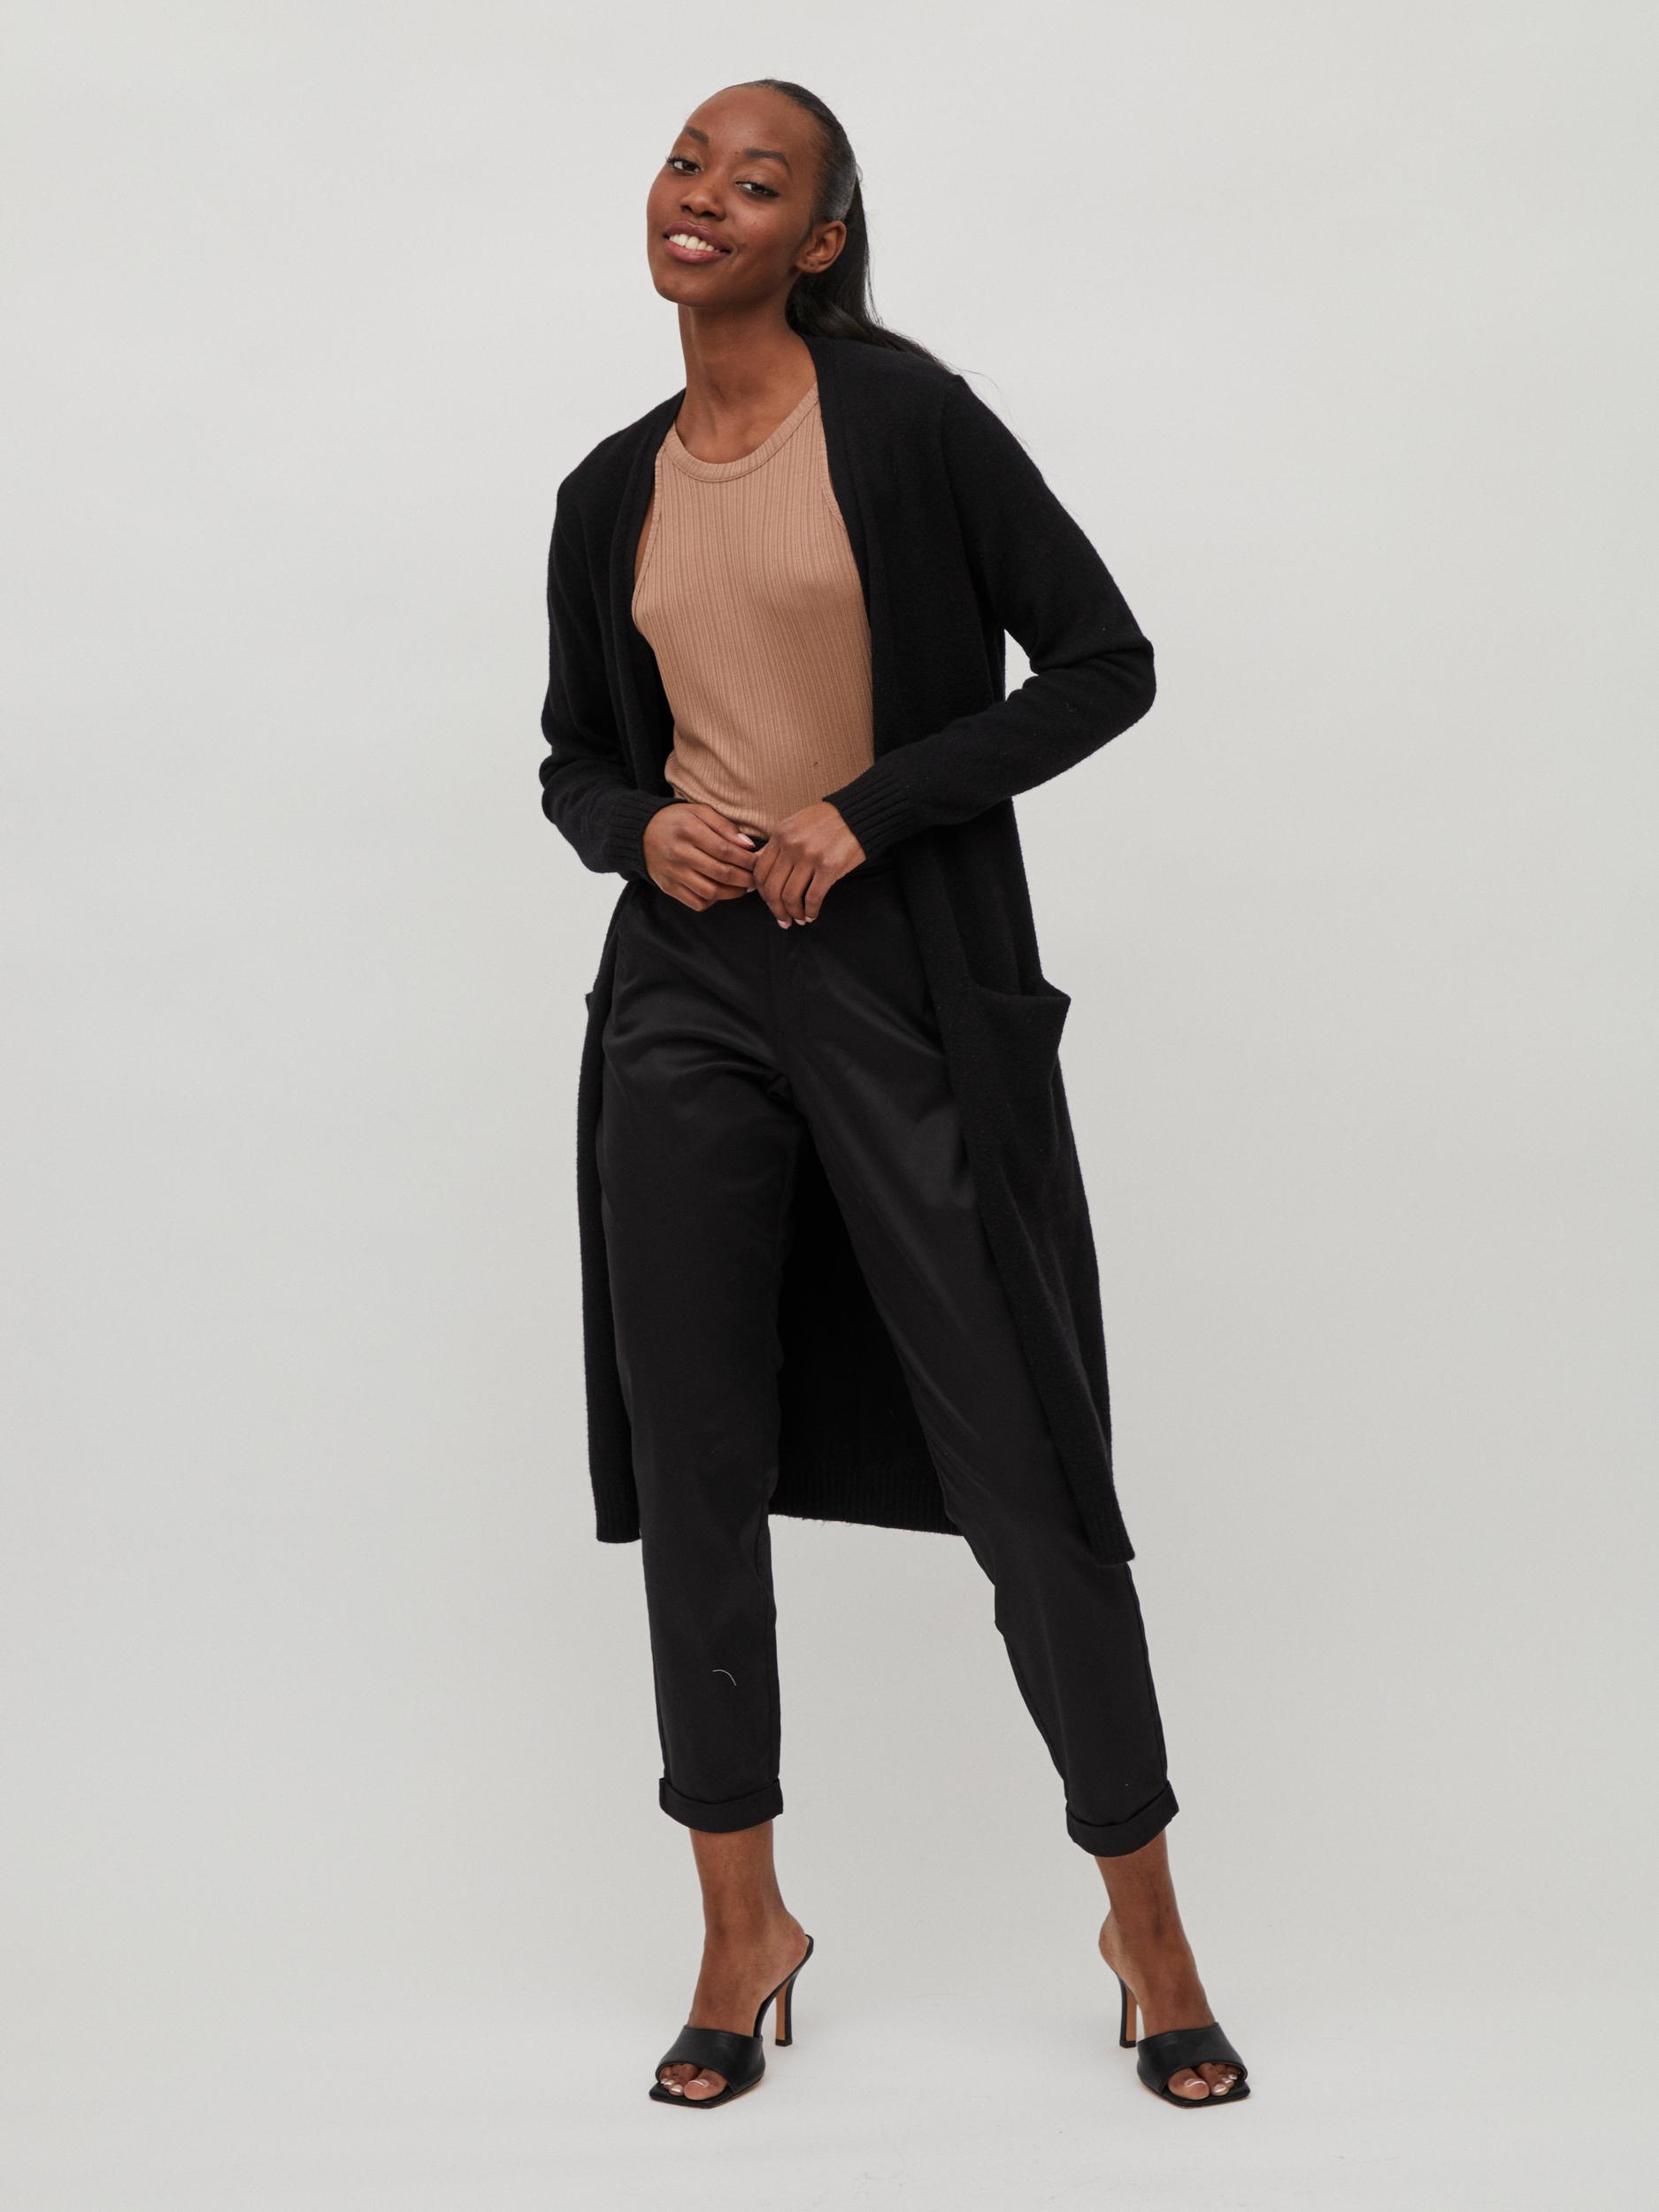 Chaqueta Viril negra larga - BEIRUT Clothes moda mujer